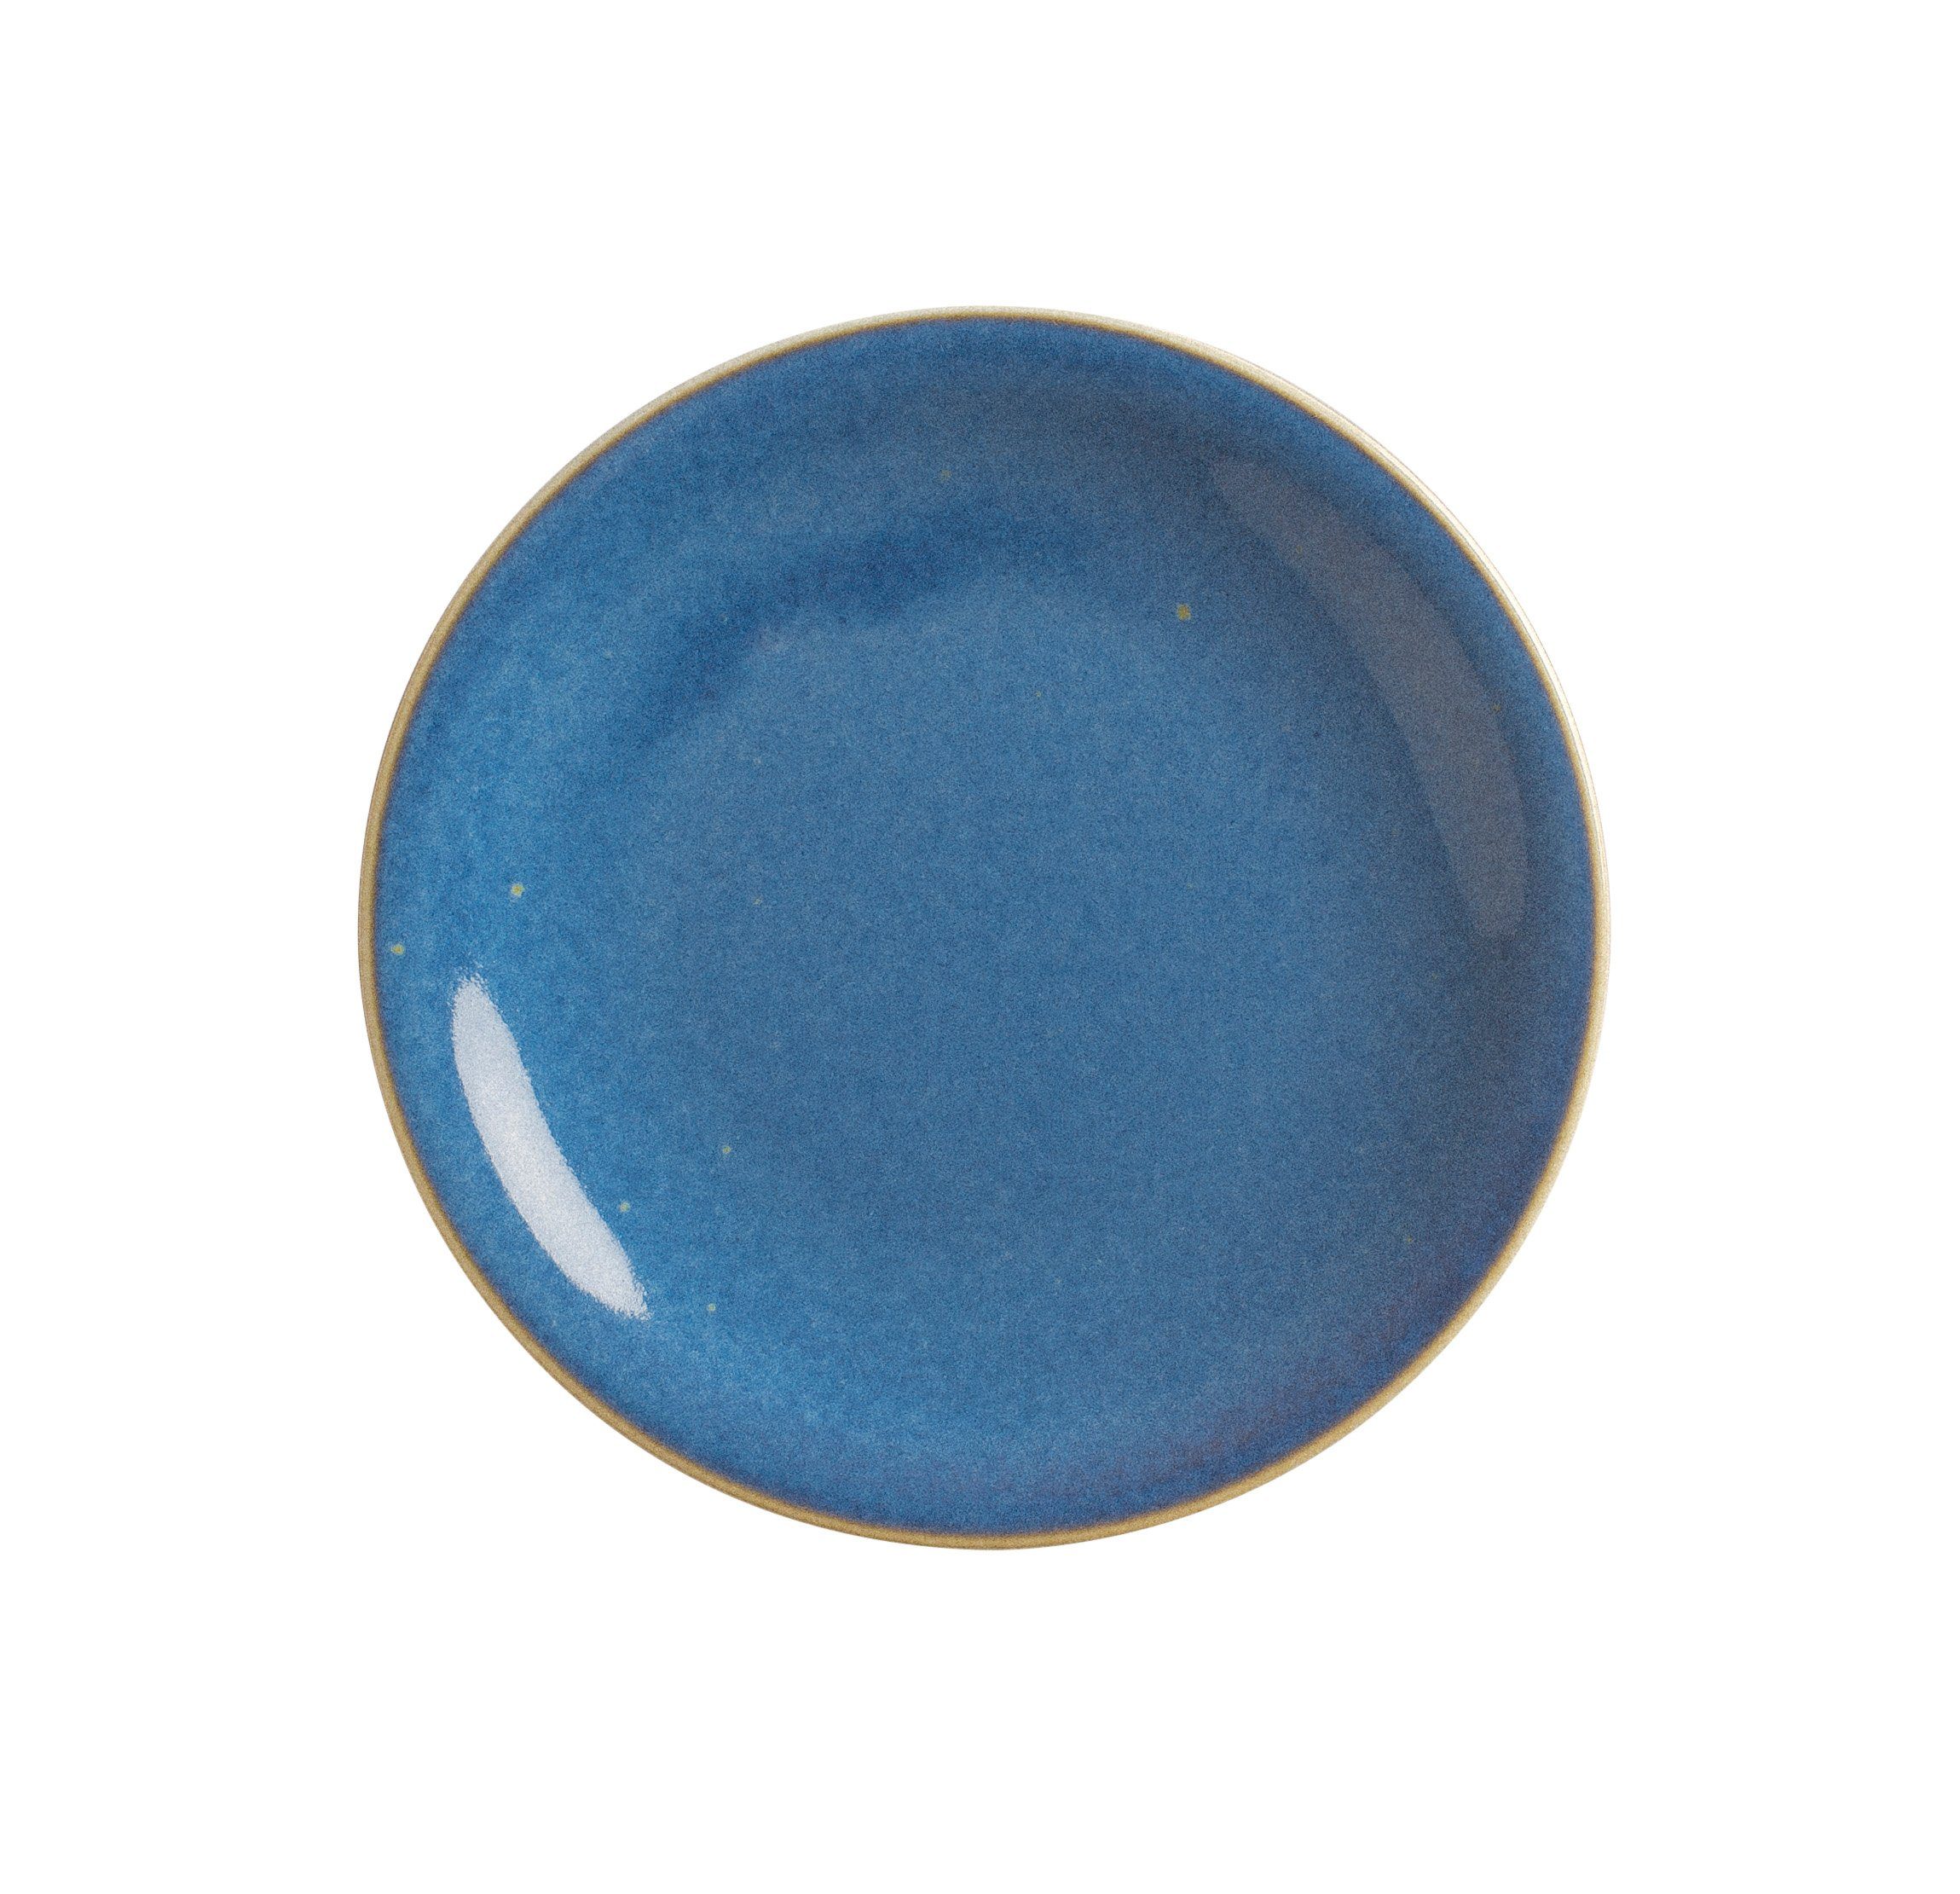 Kahla Brotteller Homestyle 16 cm, Handglasiert, Made in Germany atlantic blue